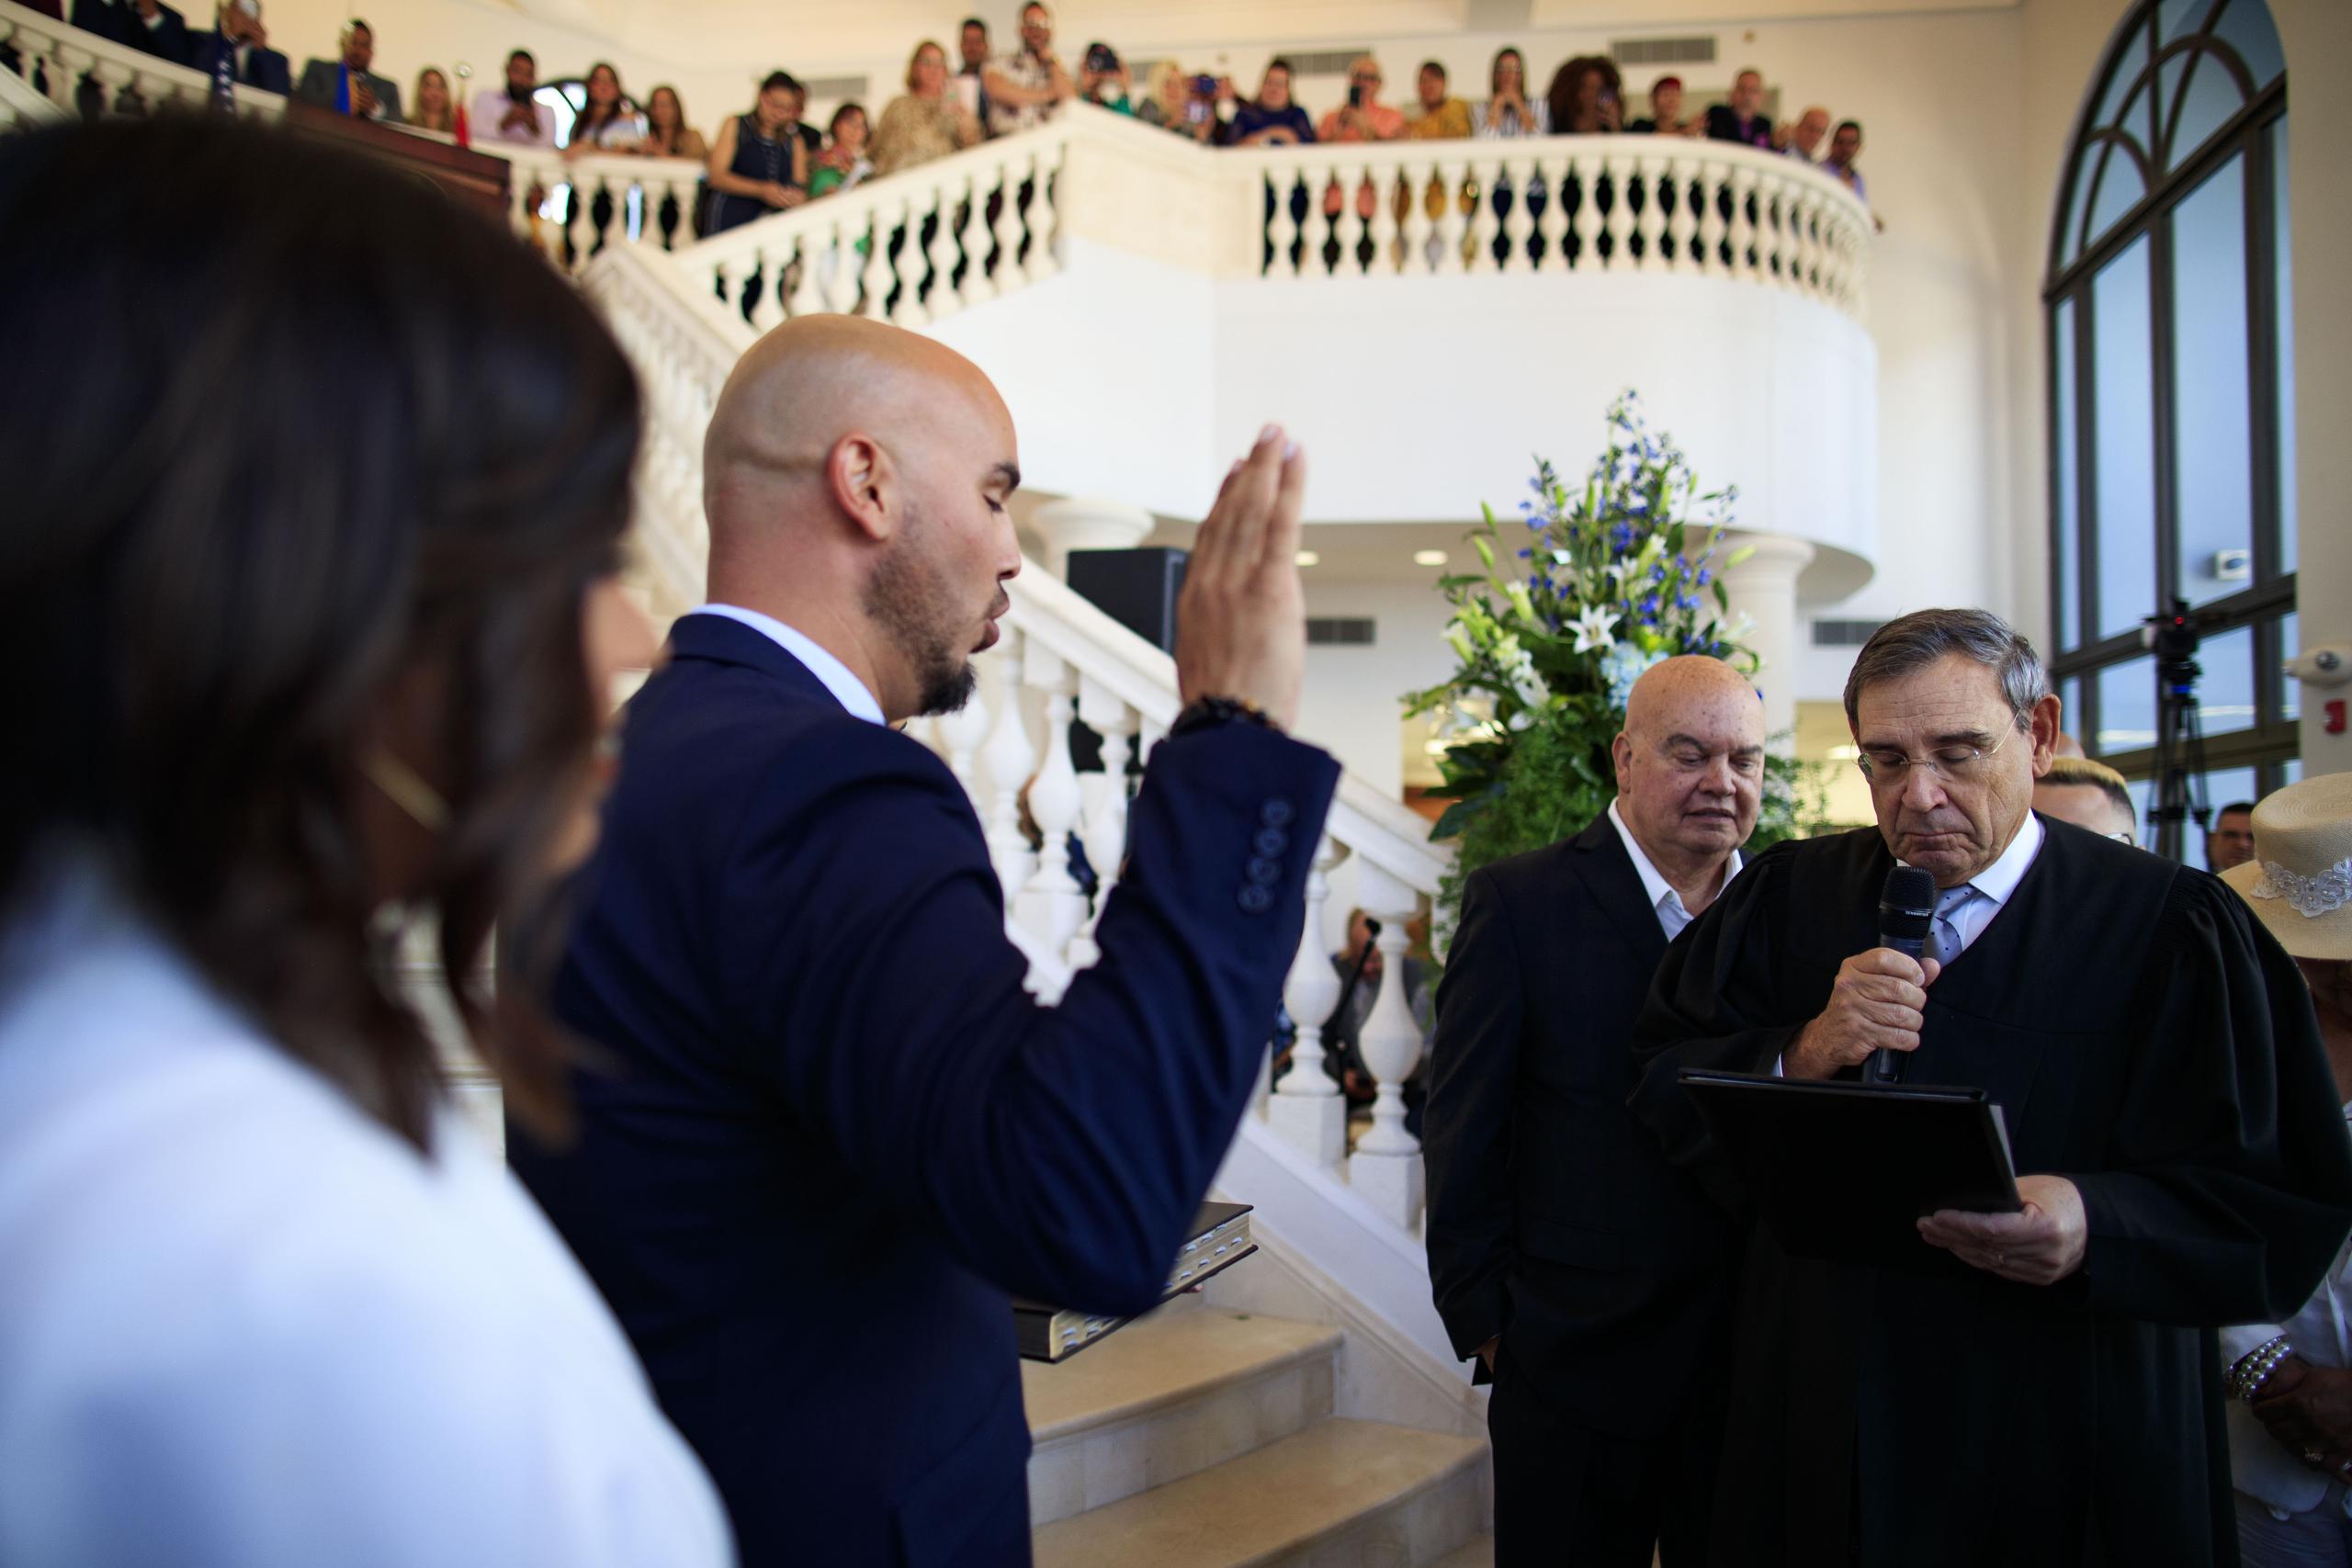 El juez federal Daniel Domínguez le tomó juramento al alcalde de Fajardo, José Aníbal Meléndez Méndez, cuando sustituyó a su padre, el fenecido Aníbal Meléndez. (Ramn "Tonito" Zayas / Staff)